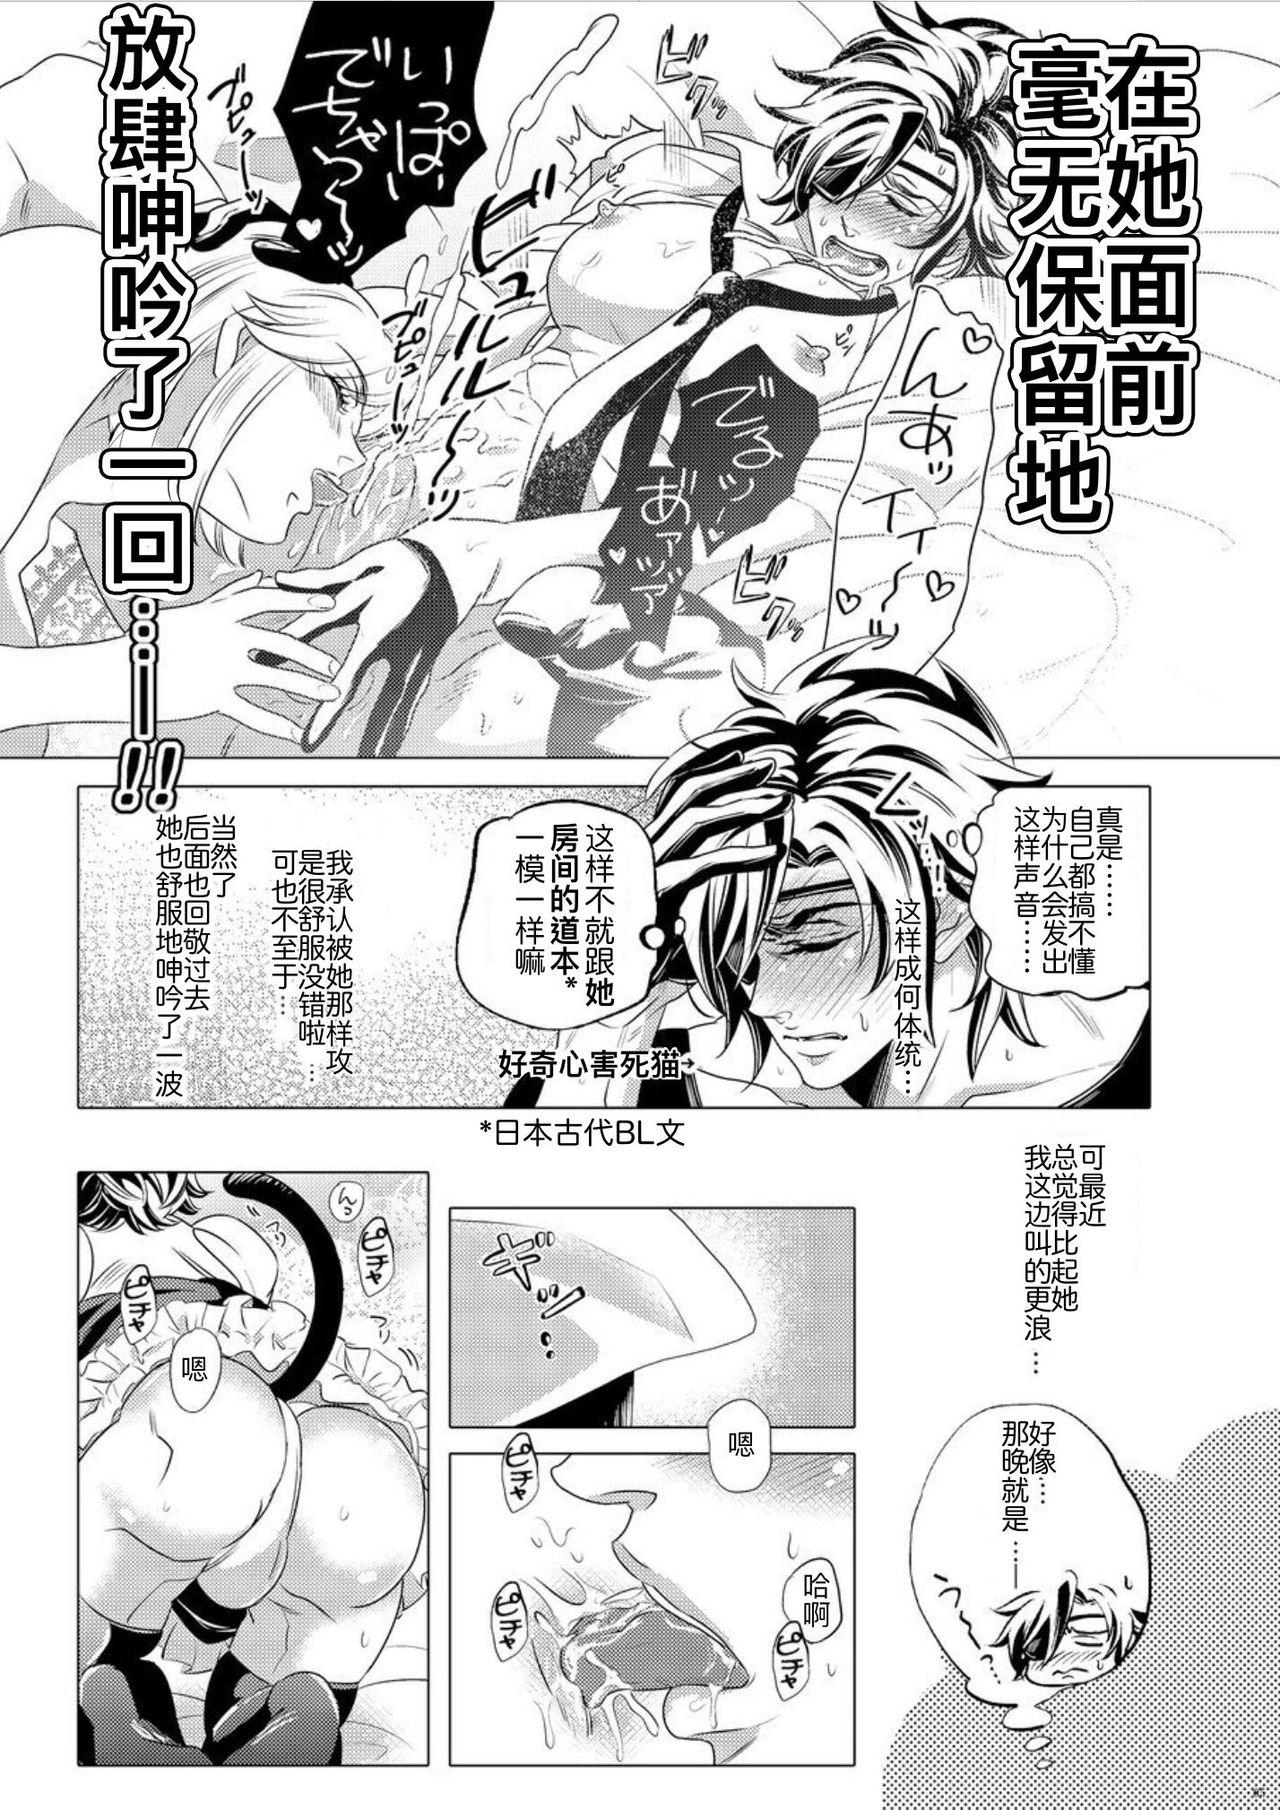 Prima Hototogisu Na Boku （Chinese ver.） - Touken ranbu Gay Twinks - Page 4